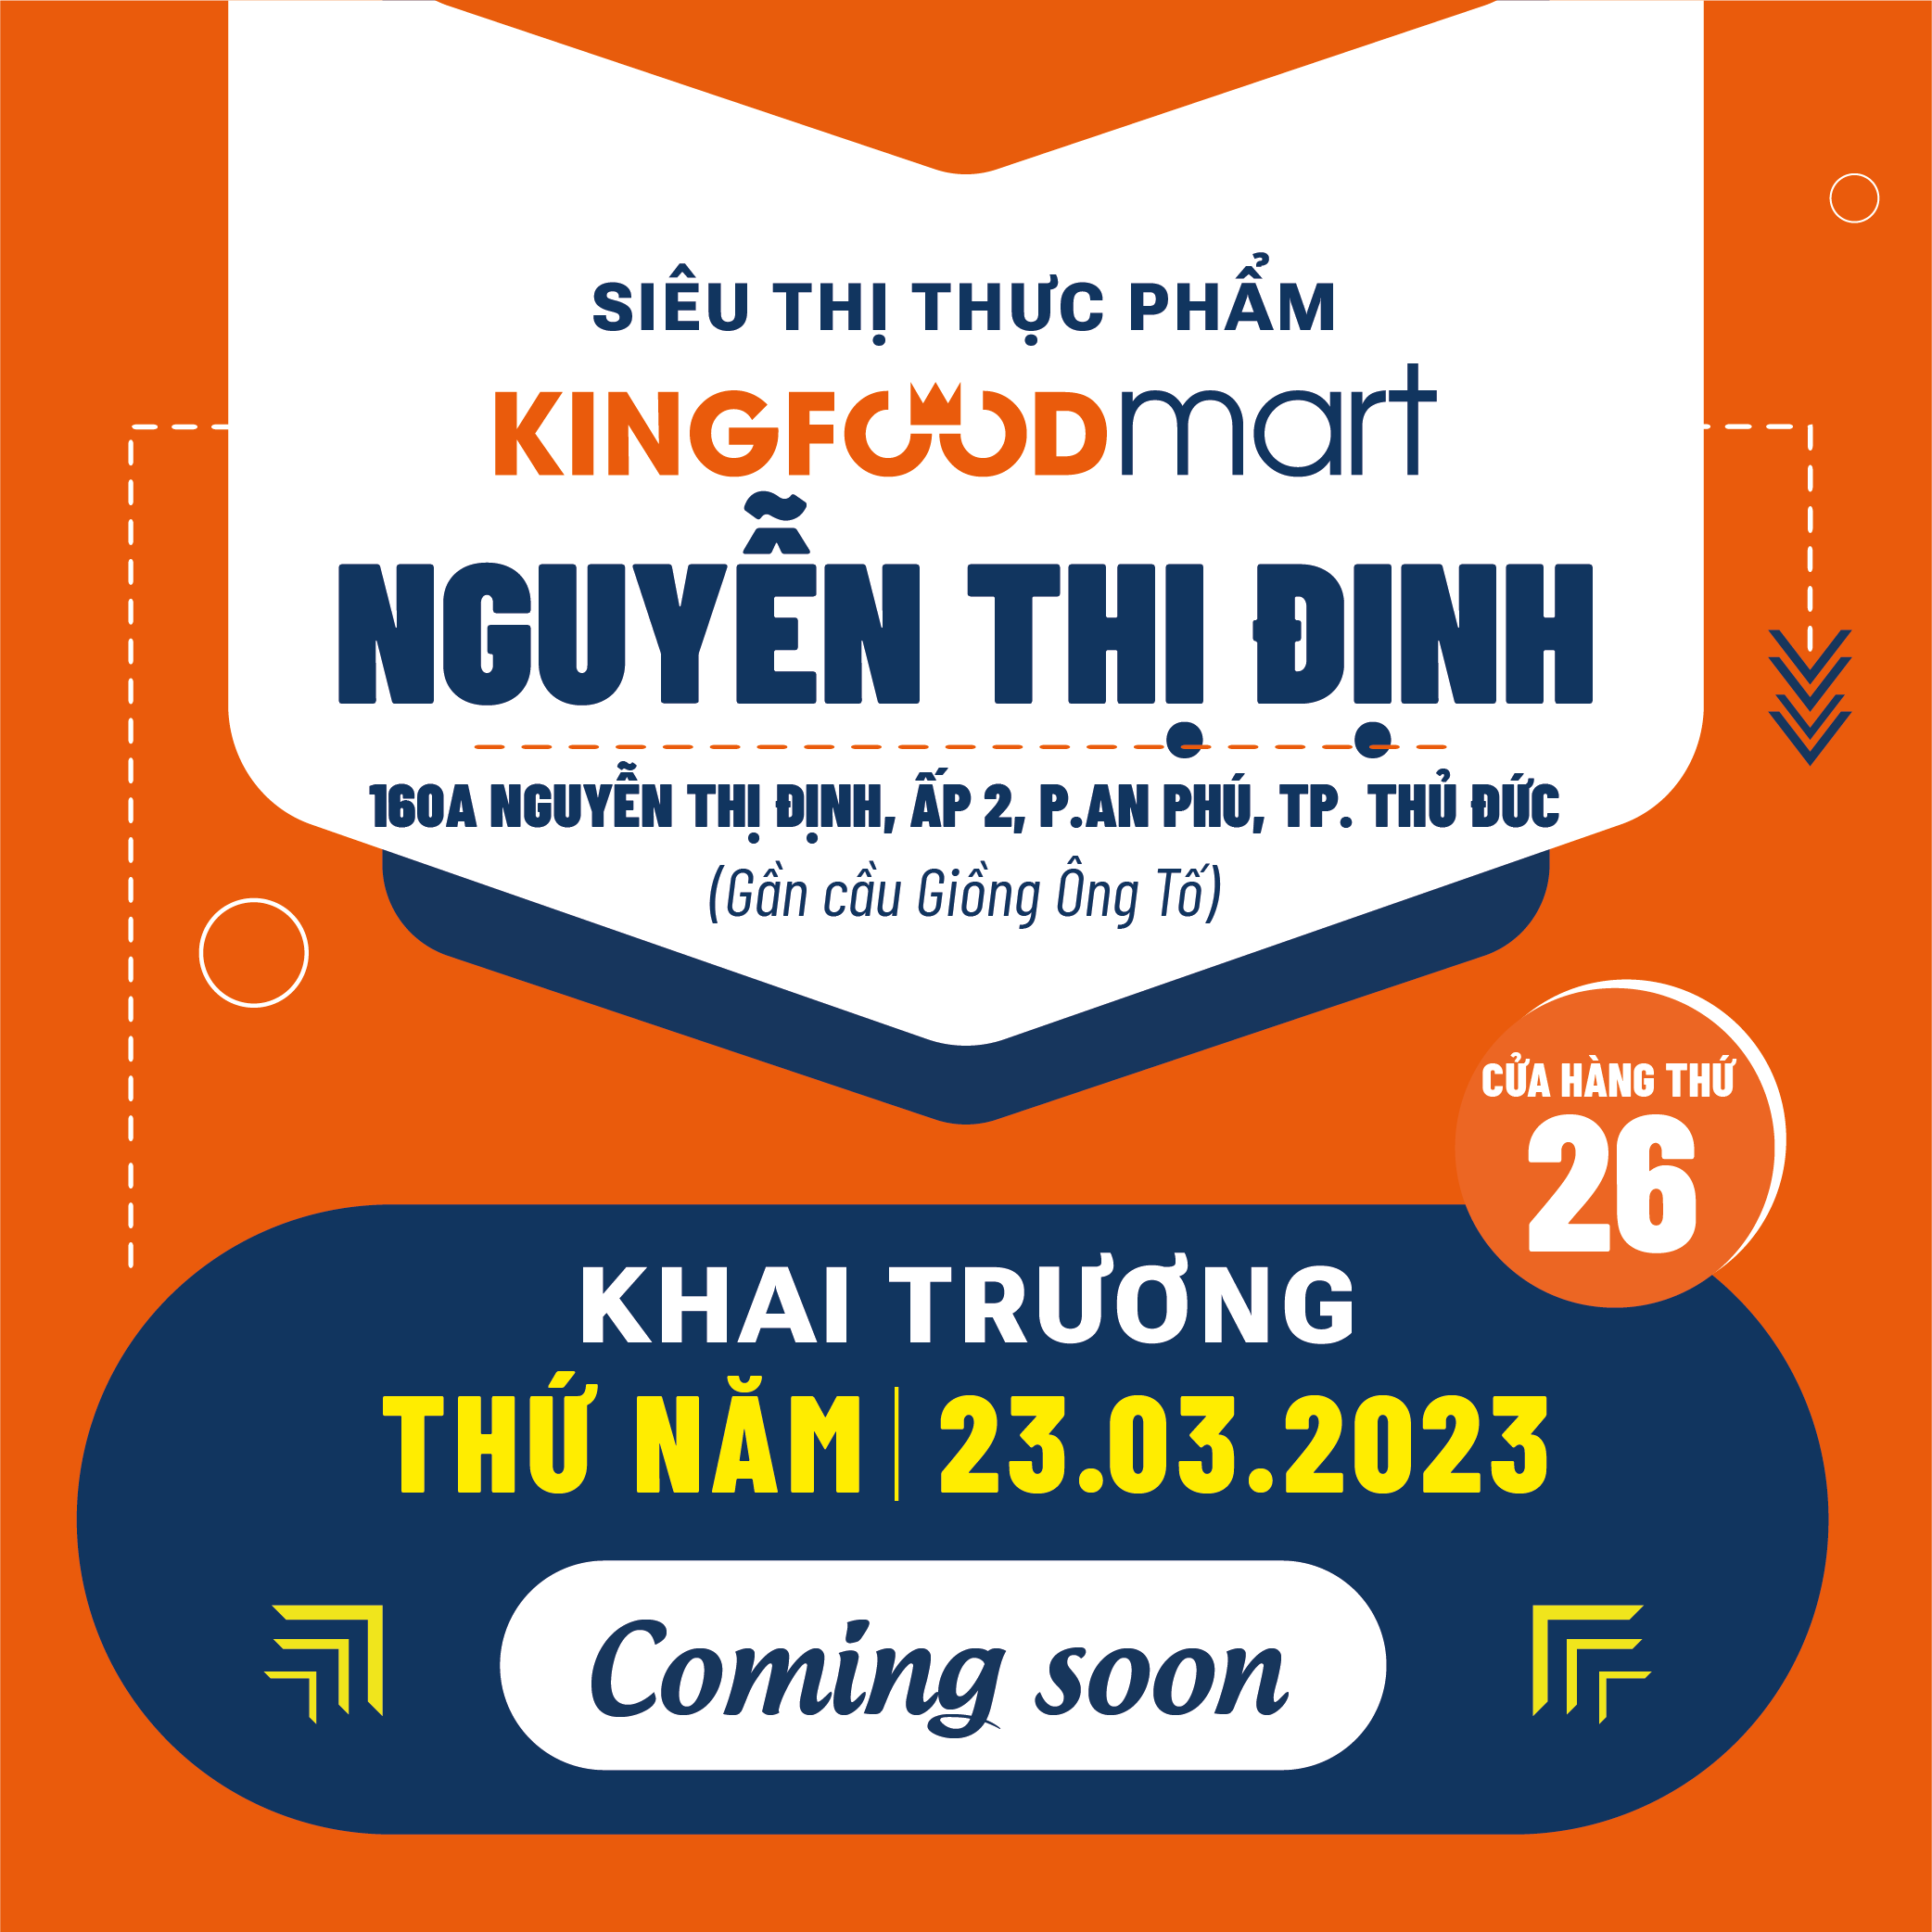 Liên Tiếp Khai Trương: Thủ Đức Vẫy Gọi, Kingfoodmart Nguyễn Thị Định Trả Lời!